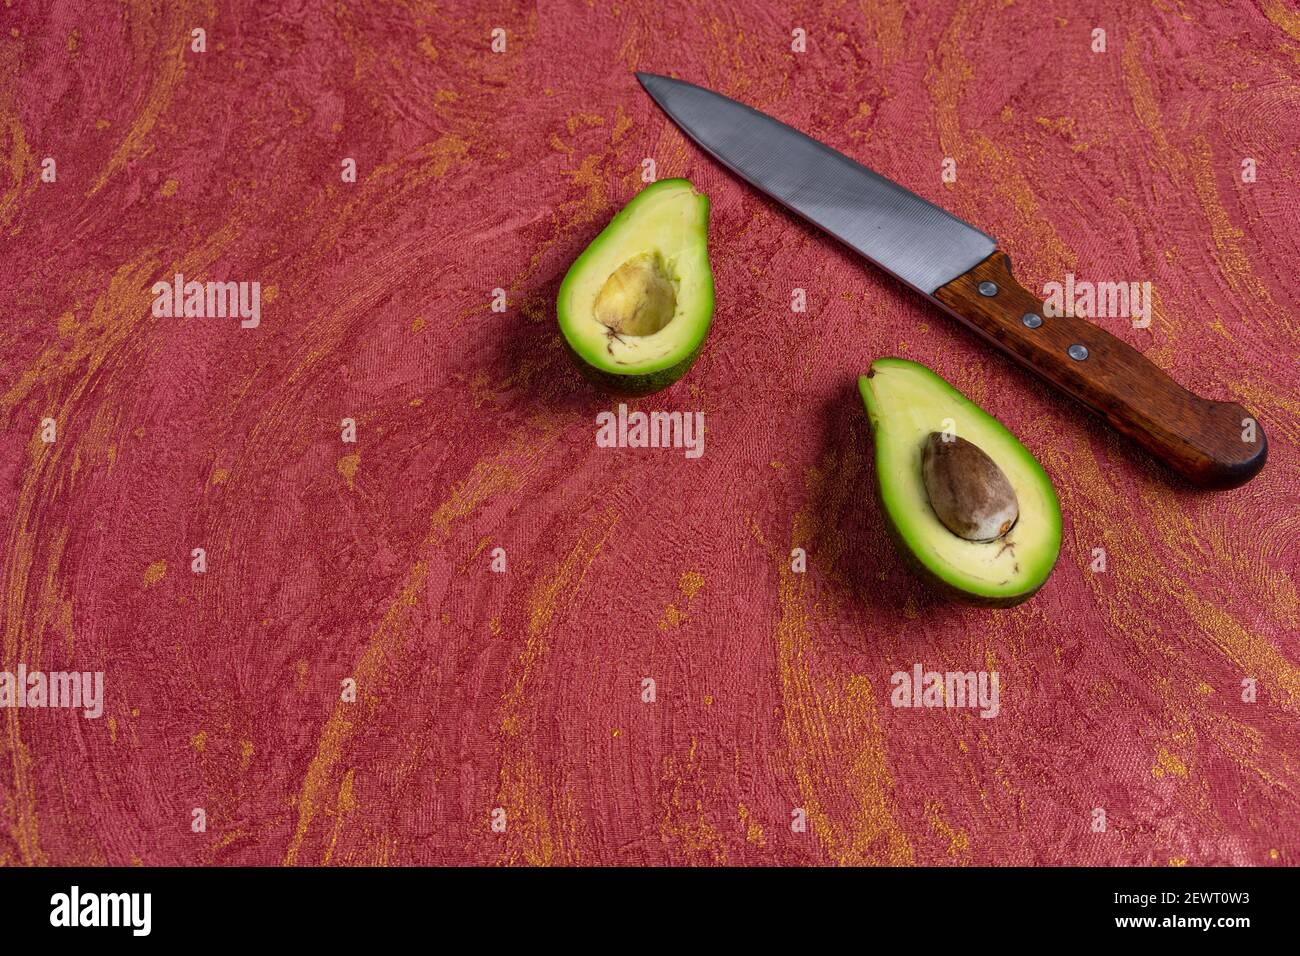 Viso avocado. Avocado tagliato al centro e coltello su sfondo rosso. Varietà avocado vista dall'alto Foto Stock